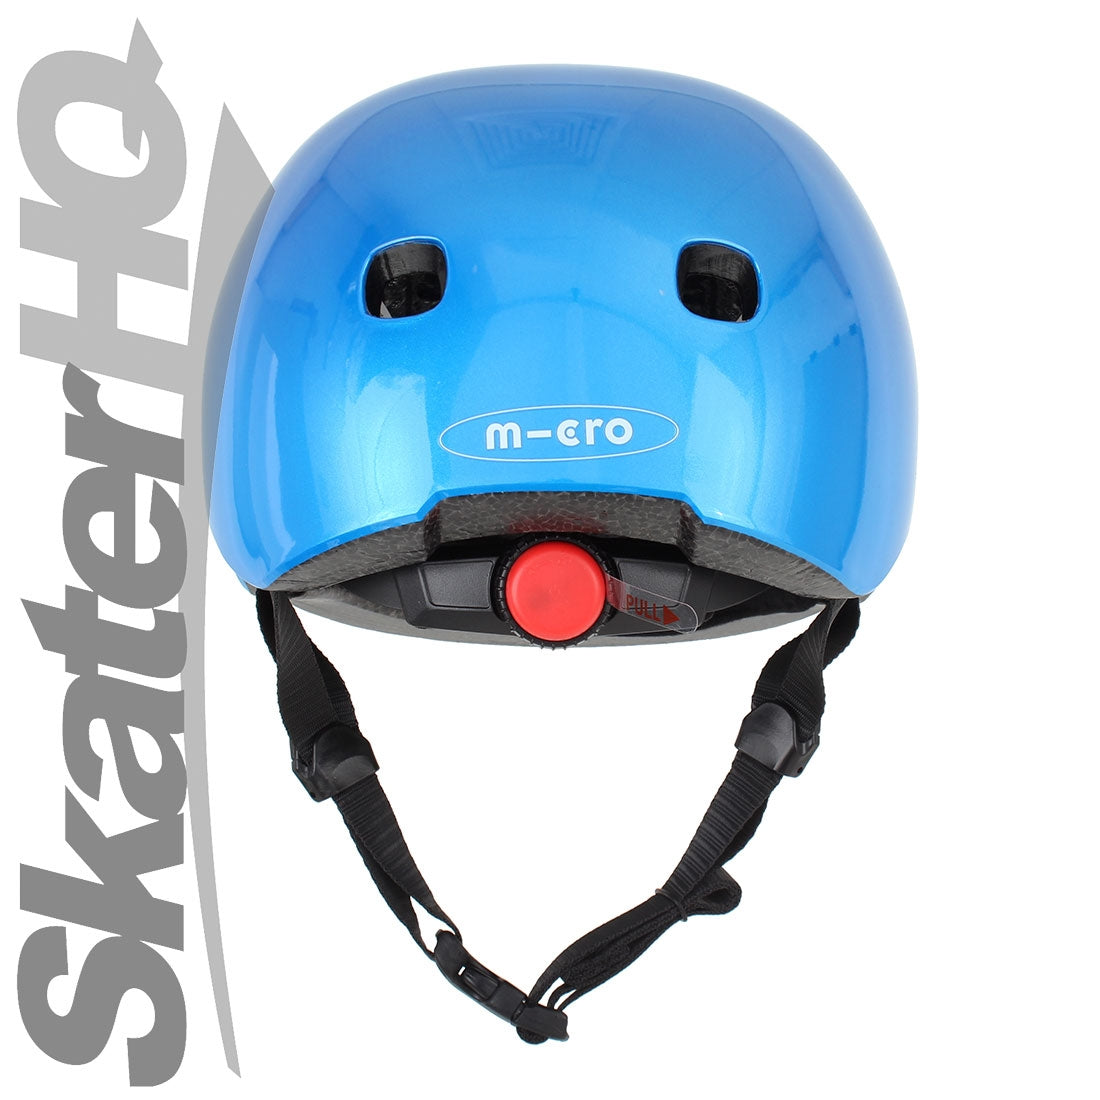 Micro Metallic Blue LED Helmet - Medium Helmets